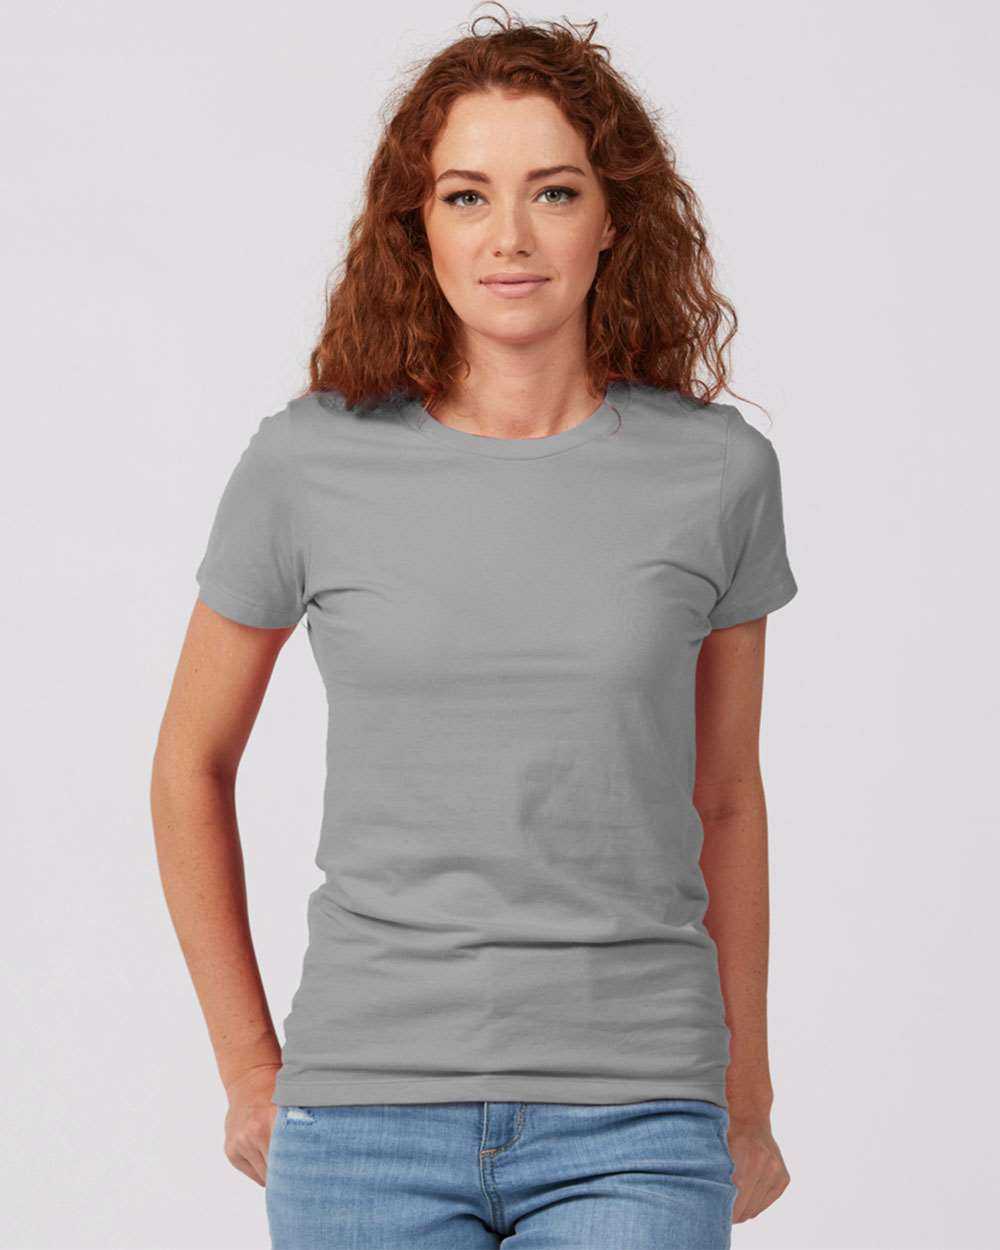 Tultex 516 Women&#39;s Premium Cotton T-Shirt - Silver - HIT a Double